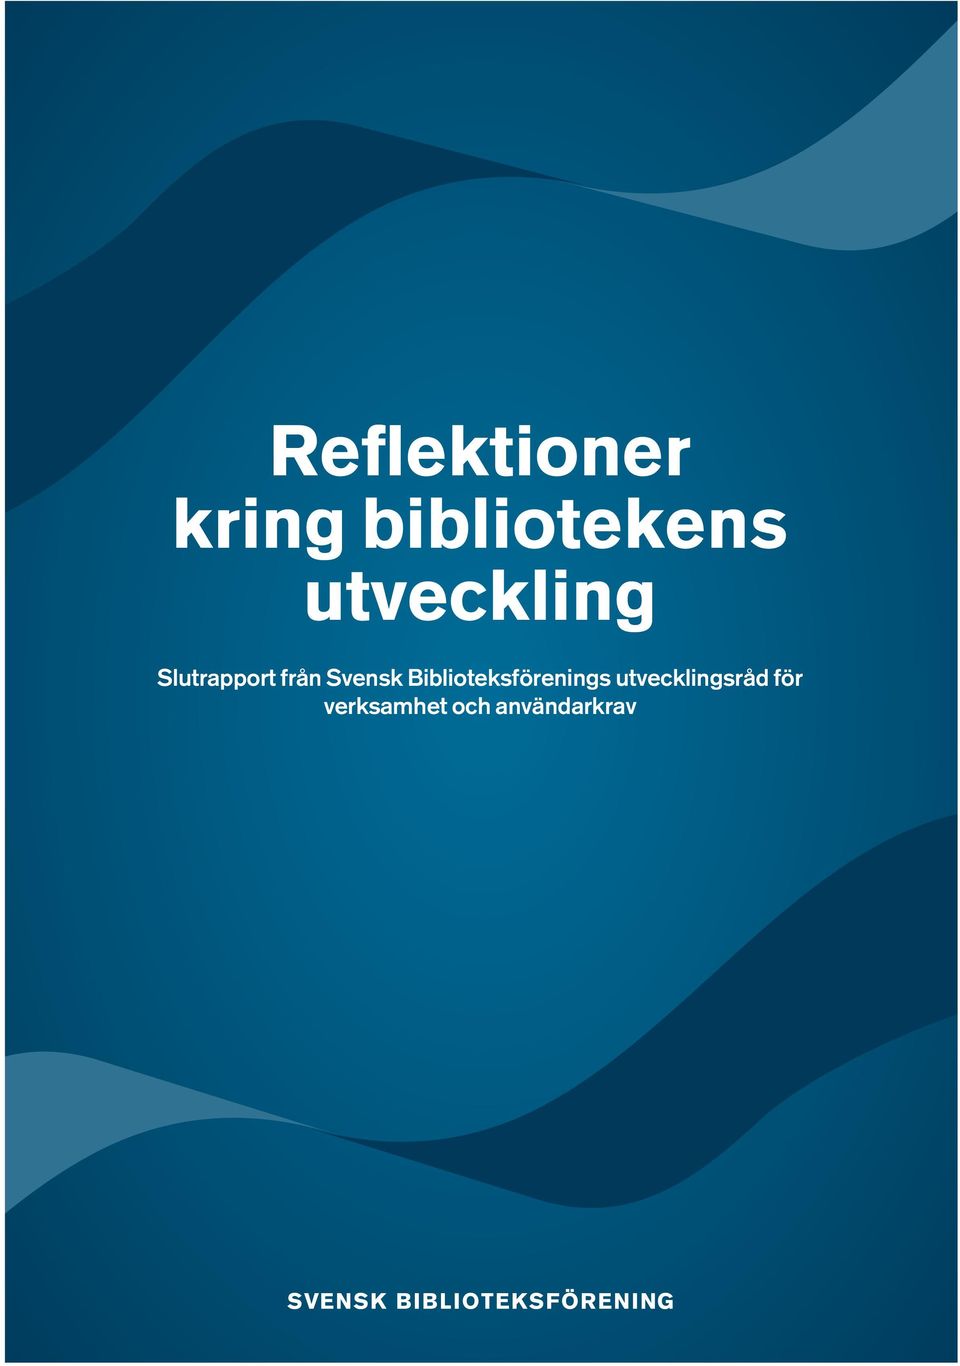 Svensk Biblioteksförenings